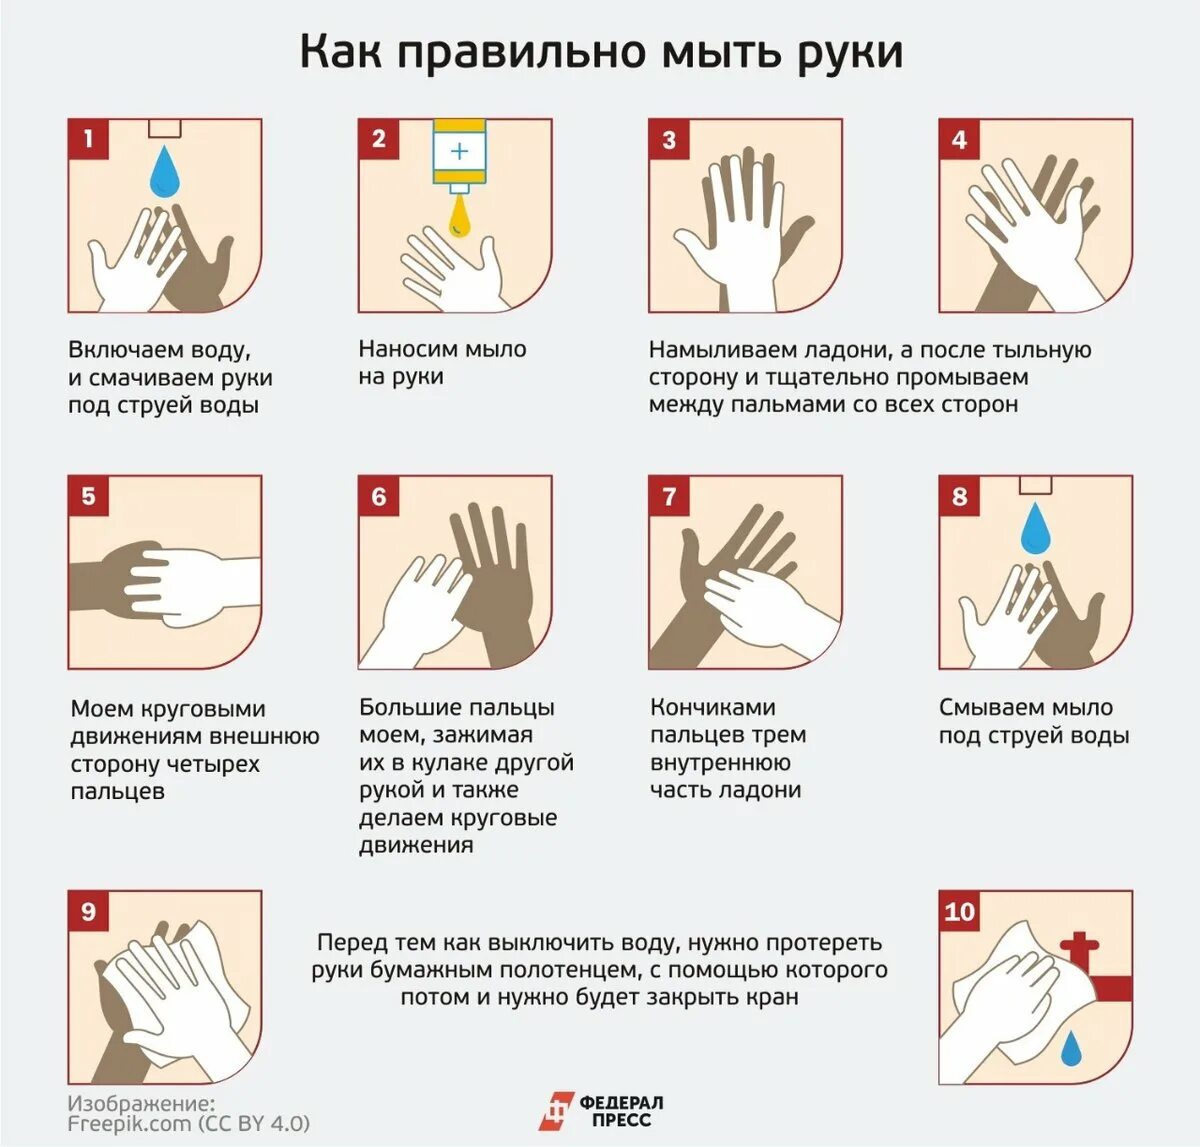 Как правильно мыть руки. КККМ правильн омыть руки. Памятка Моем руки правильно. КПК правилльнл мыть руки.